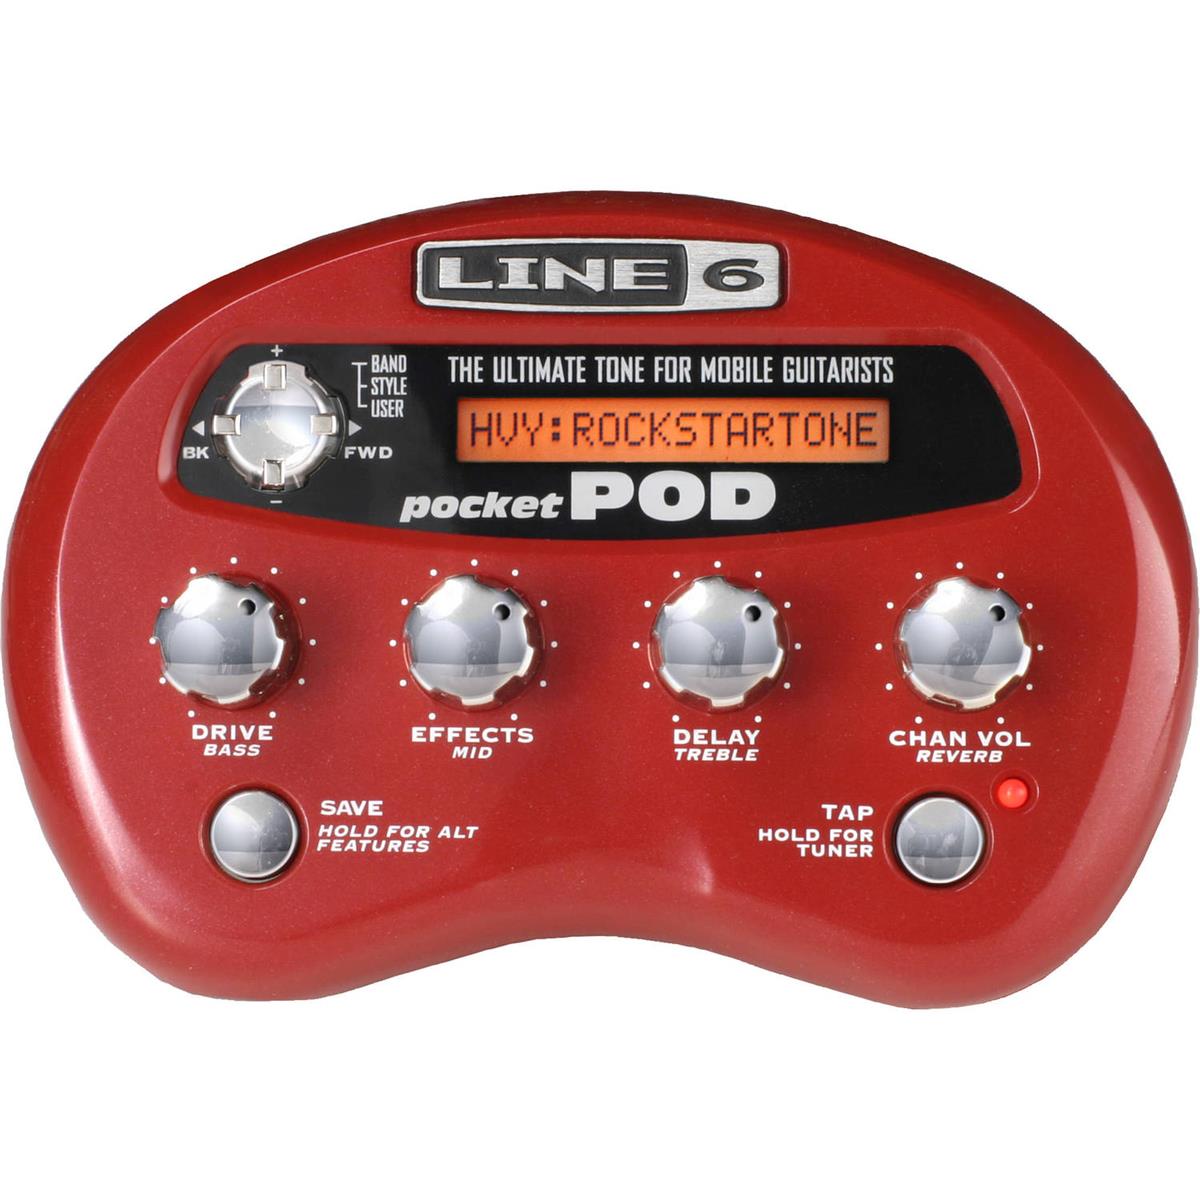 Модель Line 6 Pocket POD для наушников/мини-усилителей с батарейным питанием для гитаристов